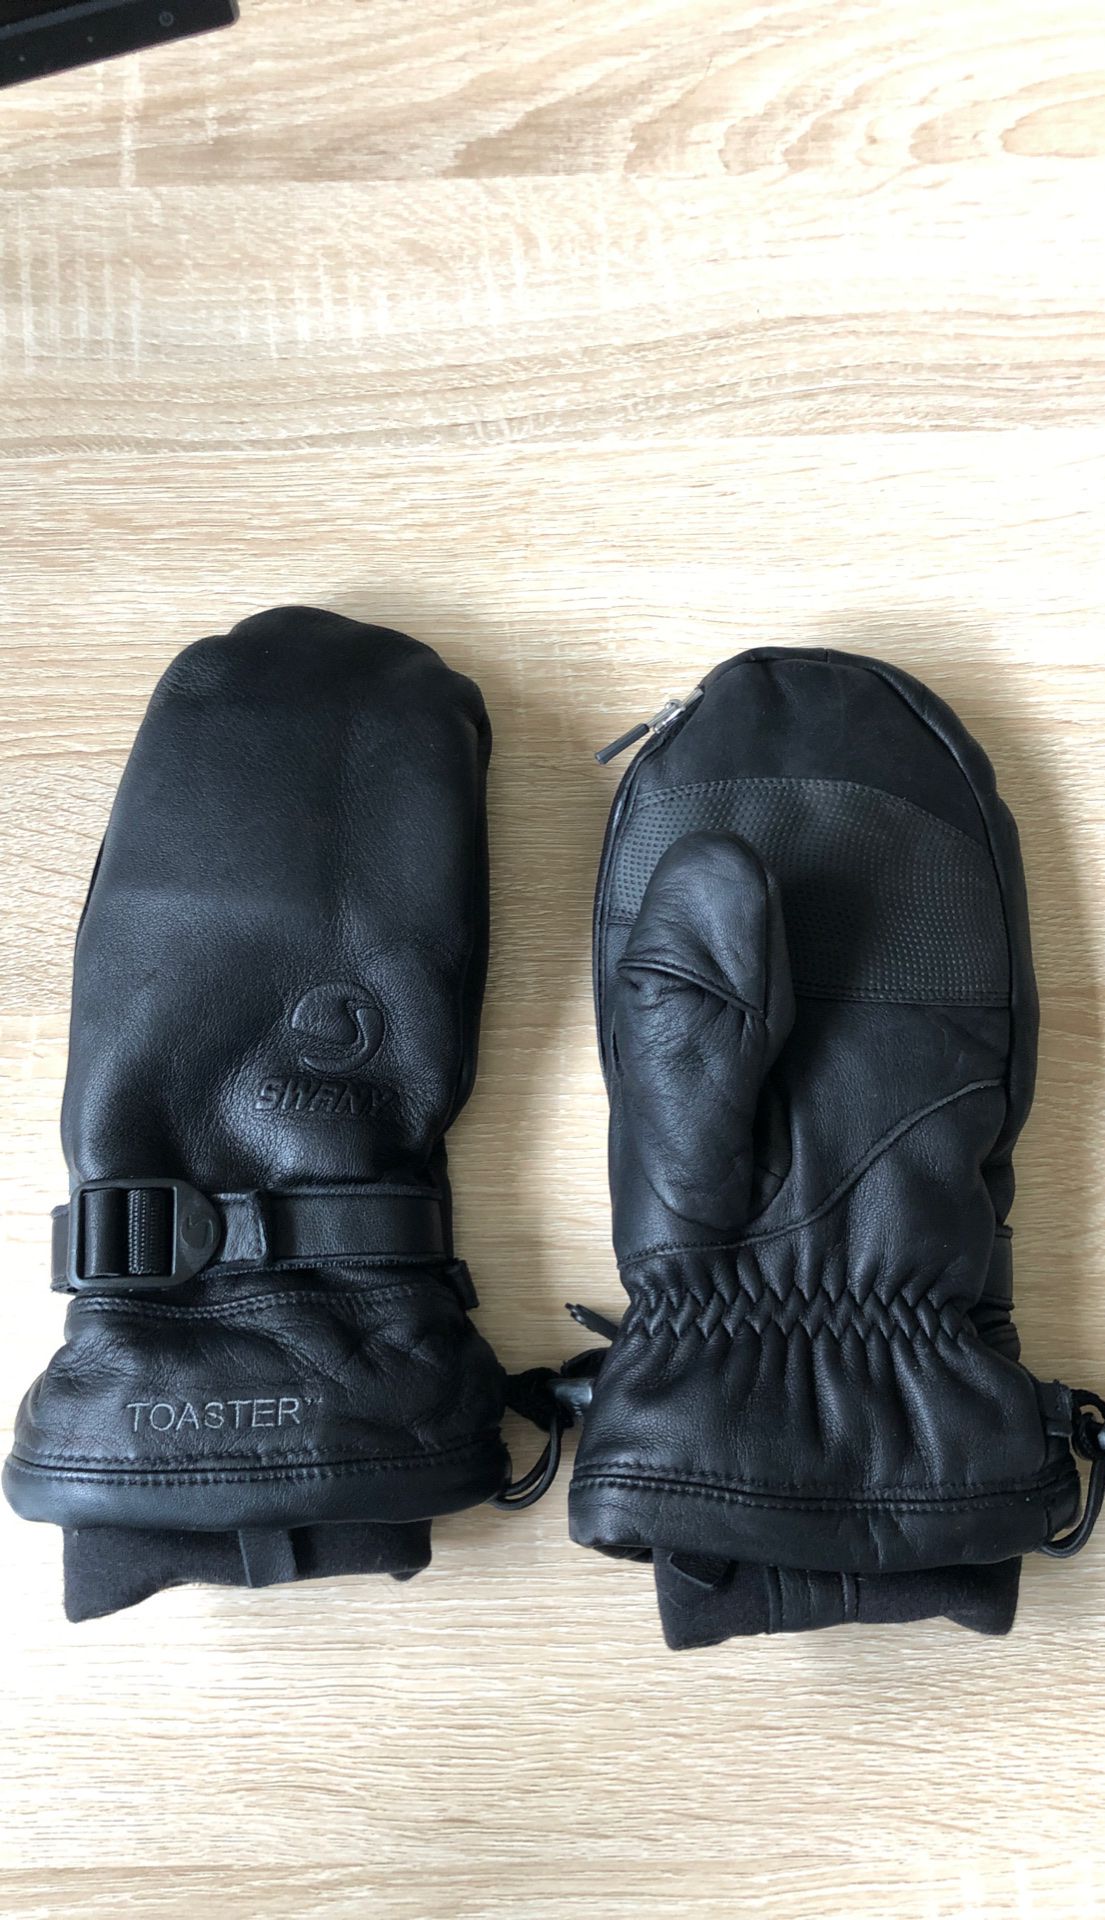 New Leather Ski Gloves